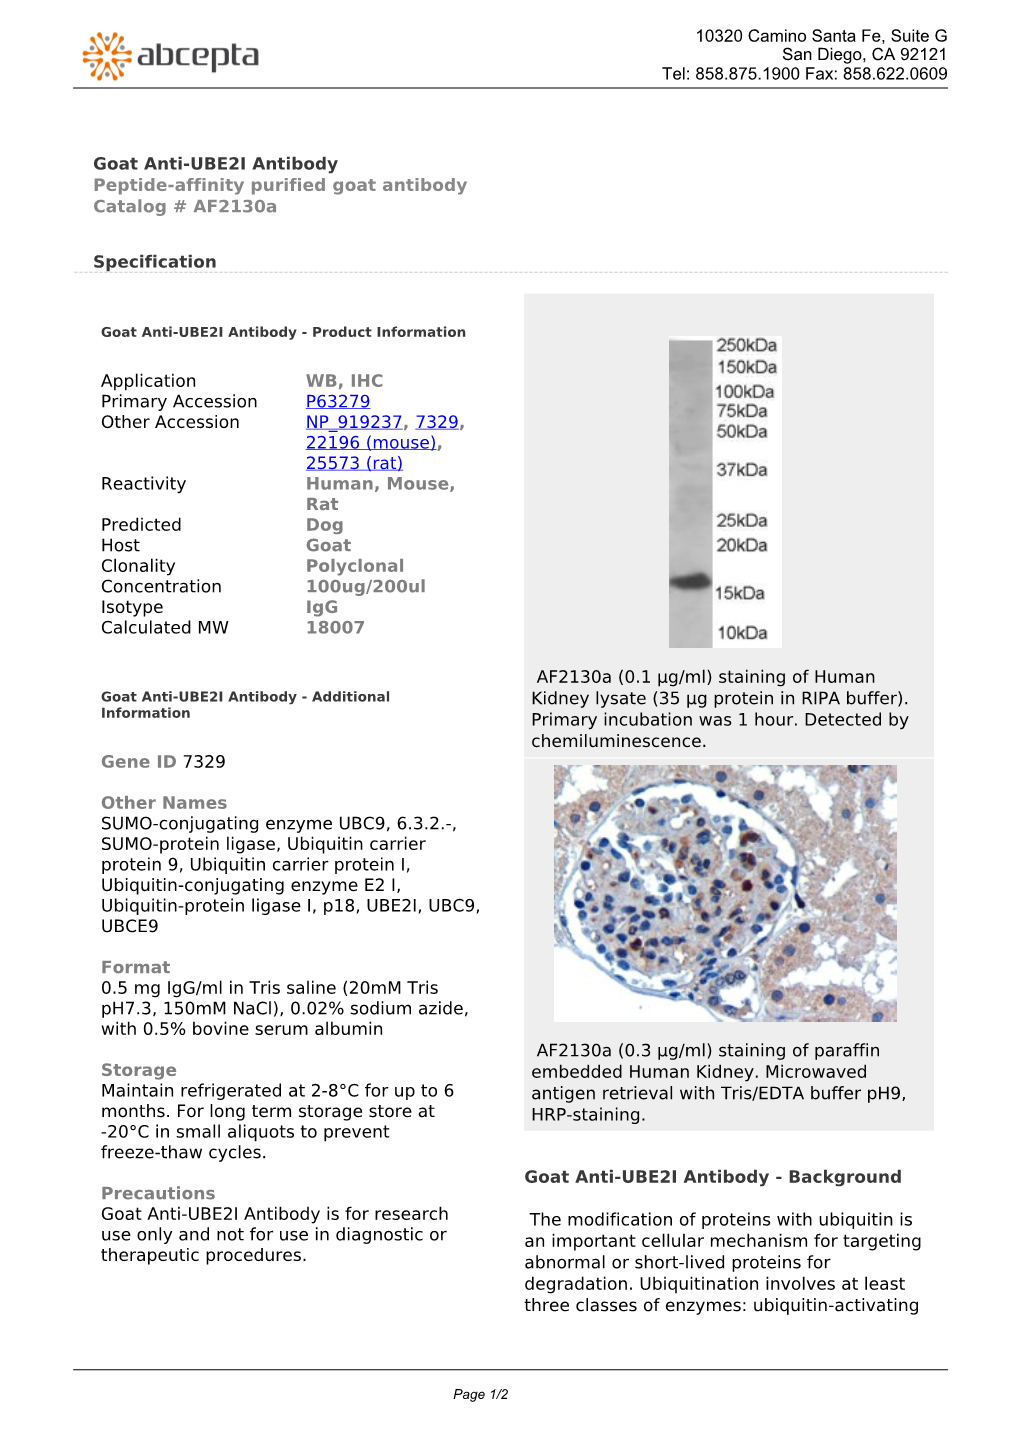 Goat Anti-UBE2I Antibody Peptide-Affinity Purified Goat Antibody Catalog # Af2130a